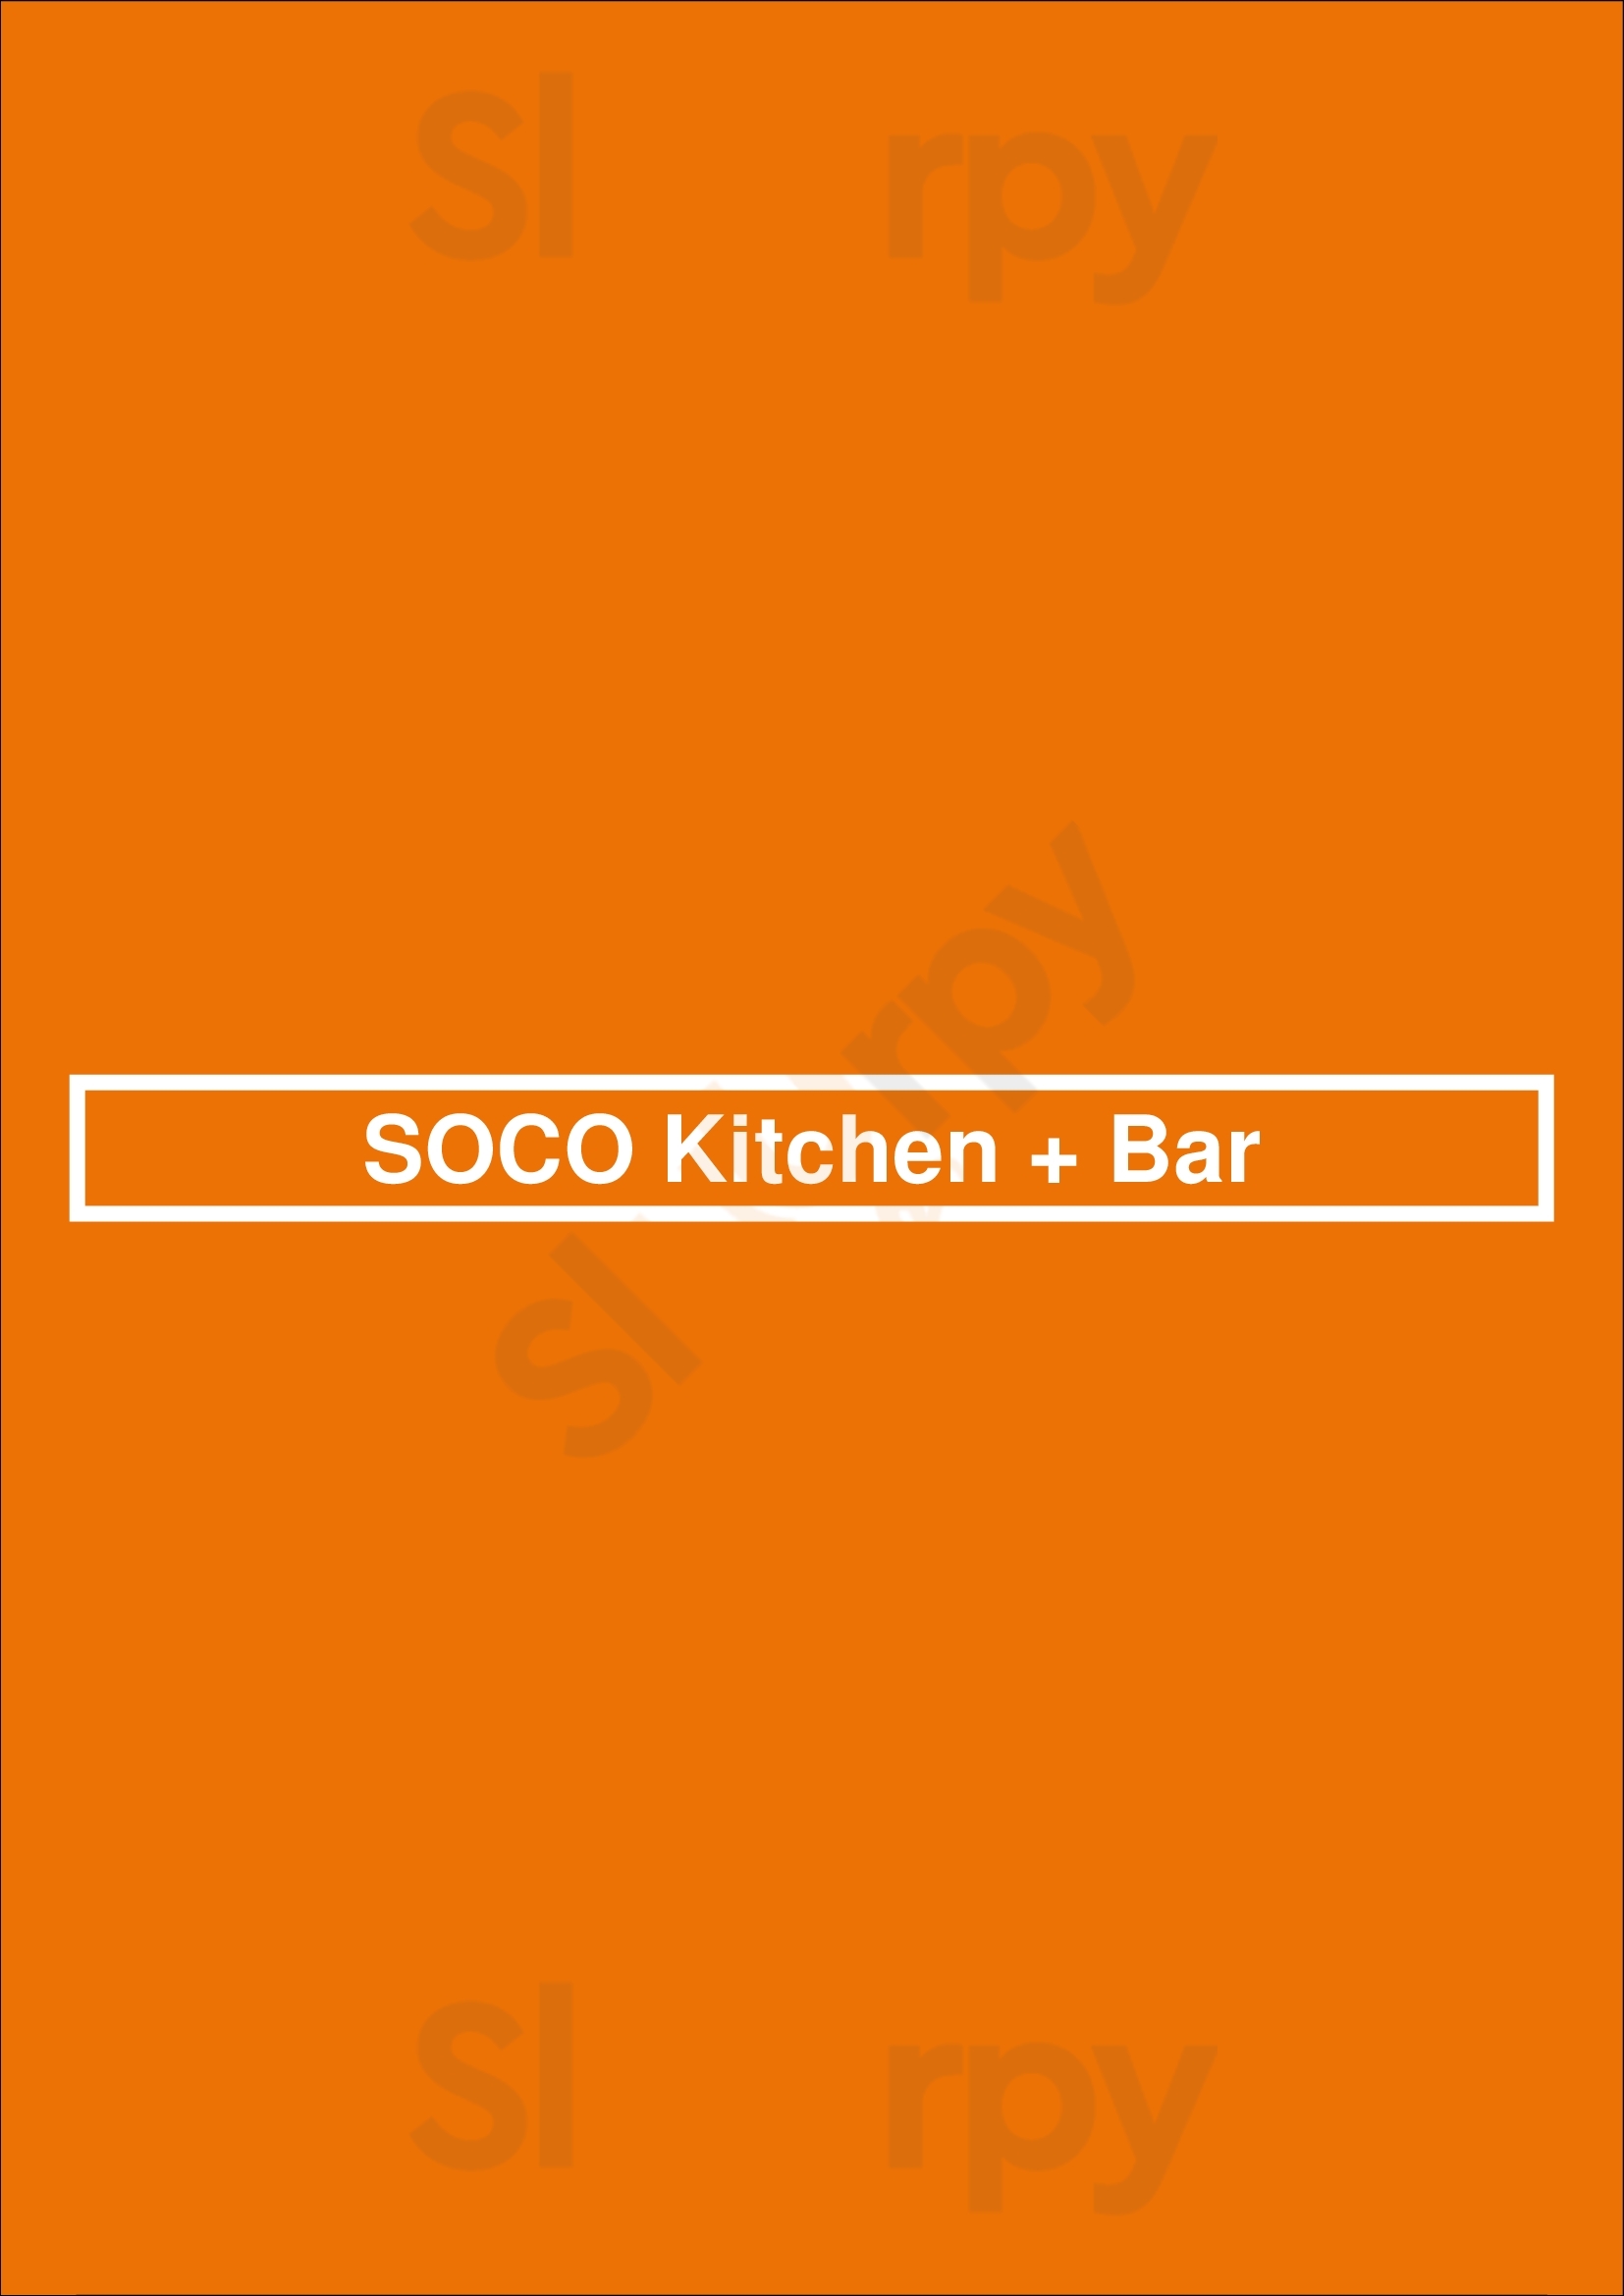 Soco Kitchen + Bar Toronto Menu - 1